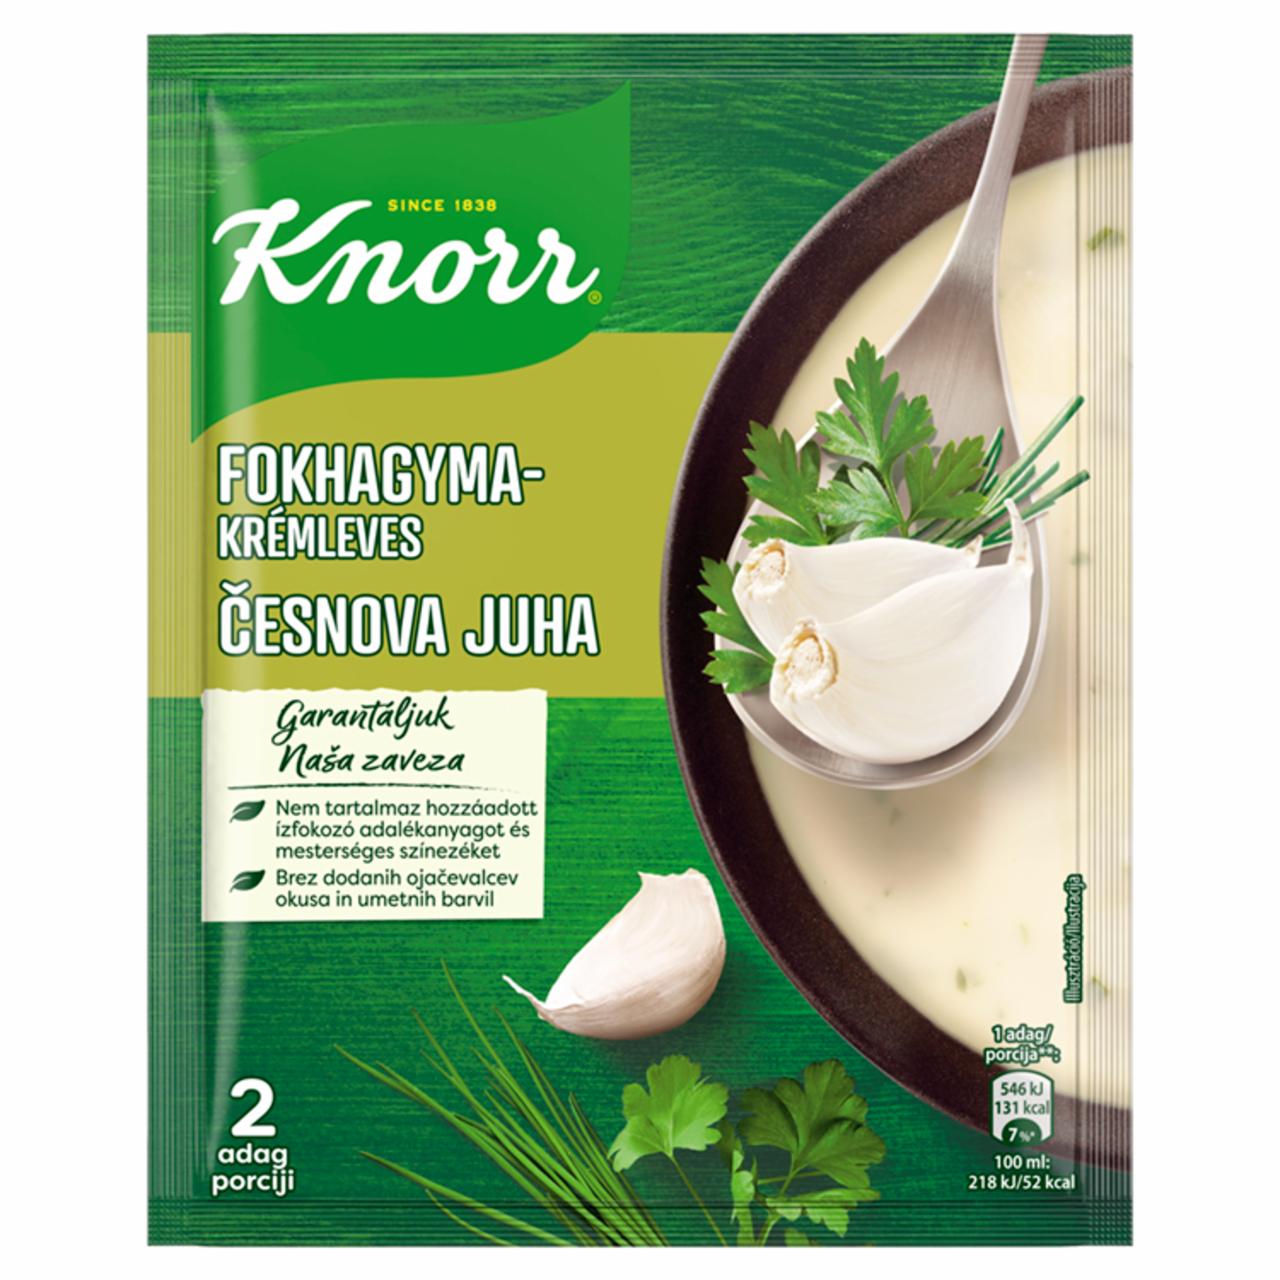 Képek - Knorr fokhagymakrémleves 61 g